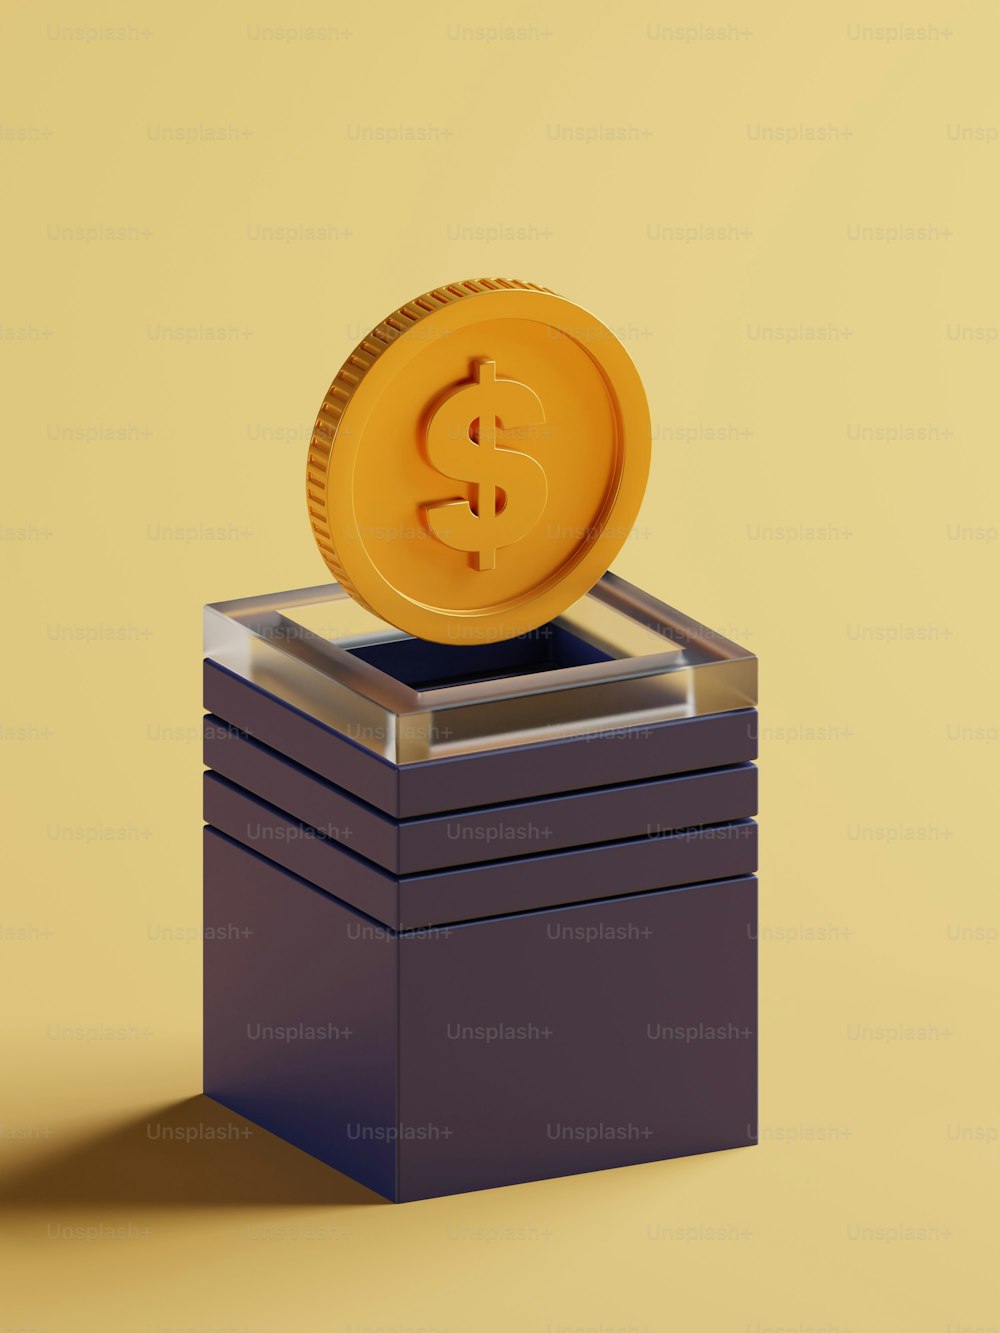 Eine Golddollarmünze sitzt auf einem Stapel schwarzer Boxen